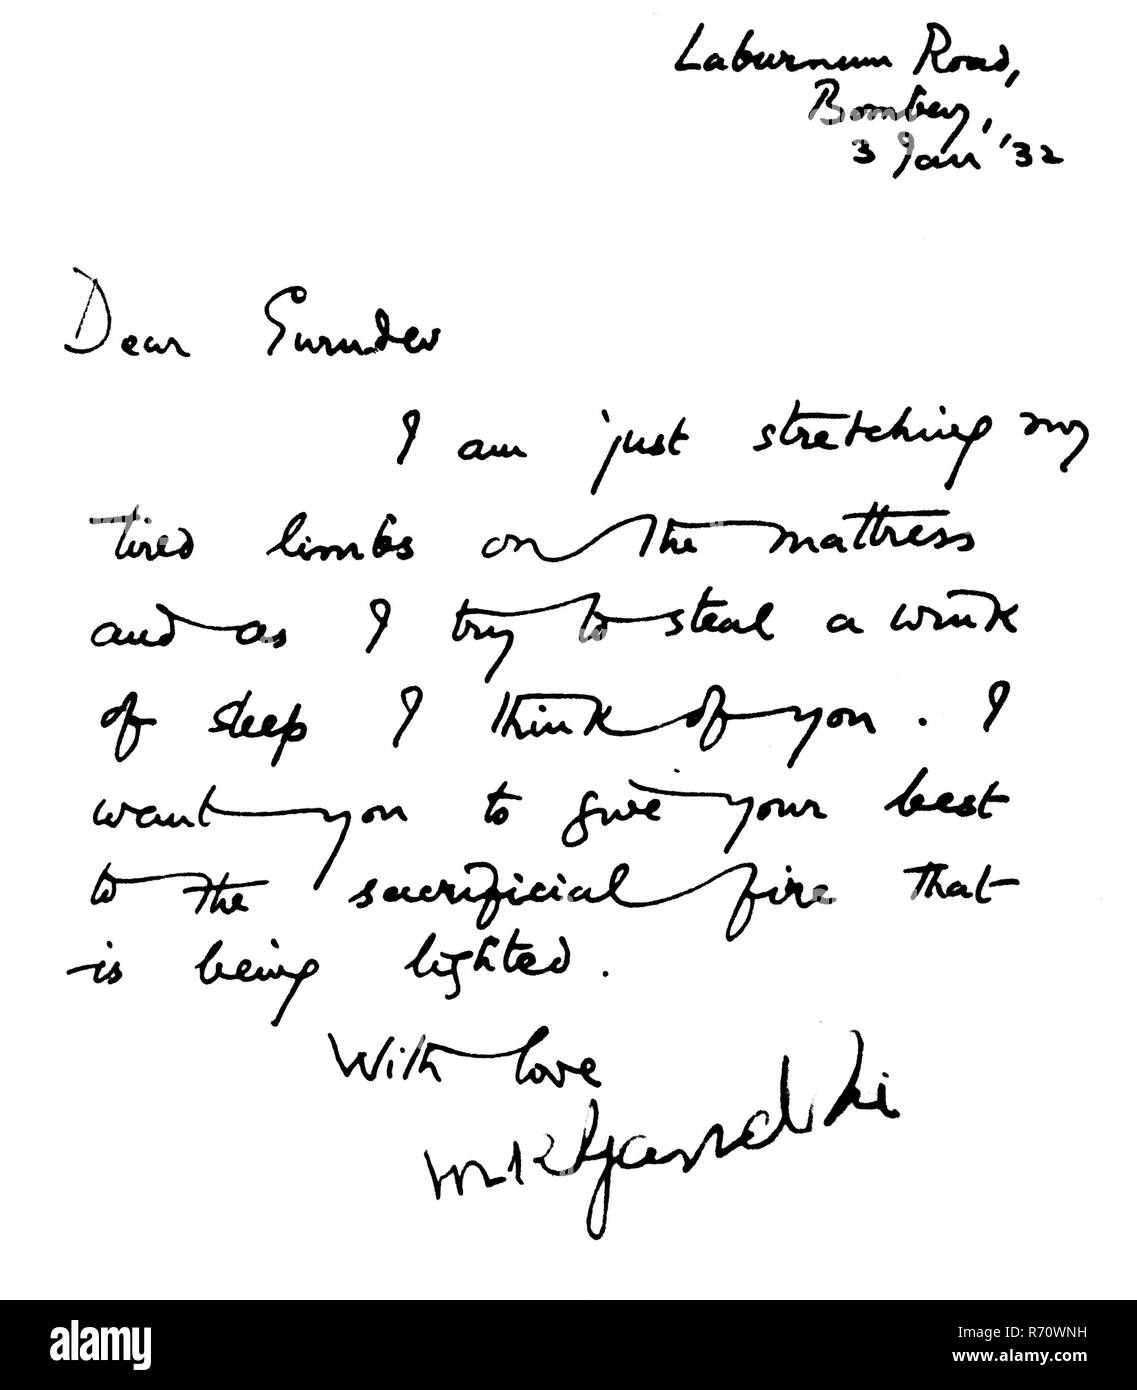 Mahatma Gandhi Hand geschriebenen Brief in englischer Sprache an Rabindranath Tagore, Mani Bhavan, Laburnum Road, Bombay, Mumbai, Indien, 3. Januar 1932, altes Bild des Jahrgangs 1900 Stockfoto